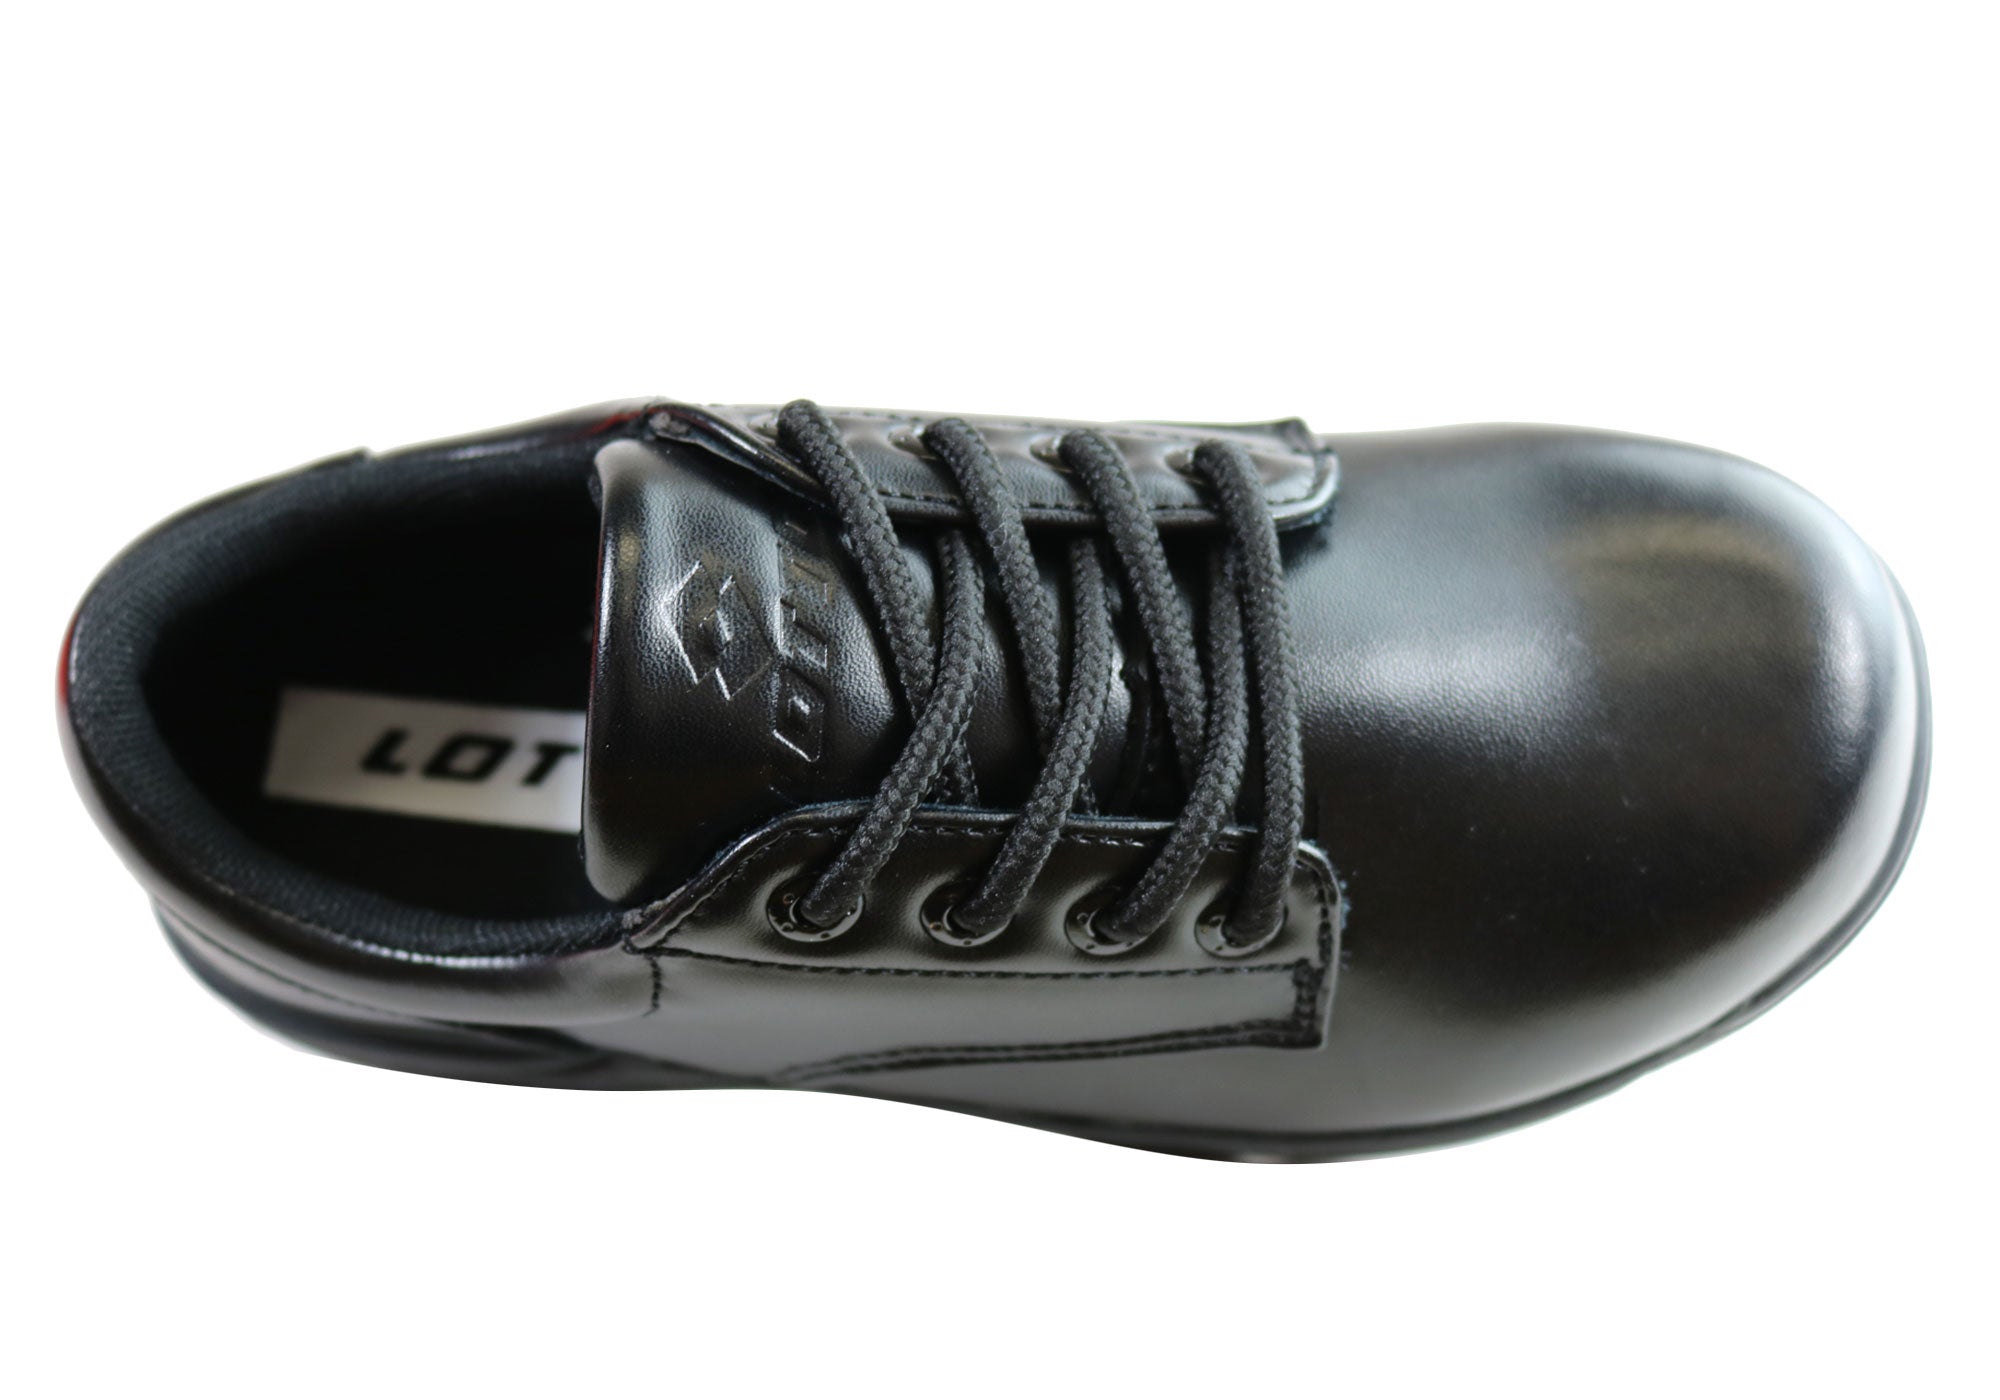 lotto school shoes black laces